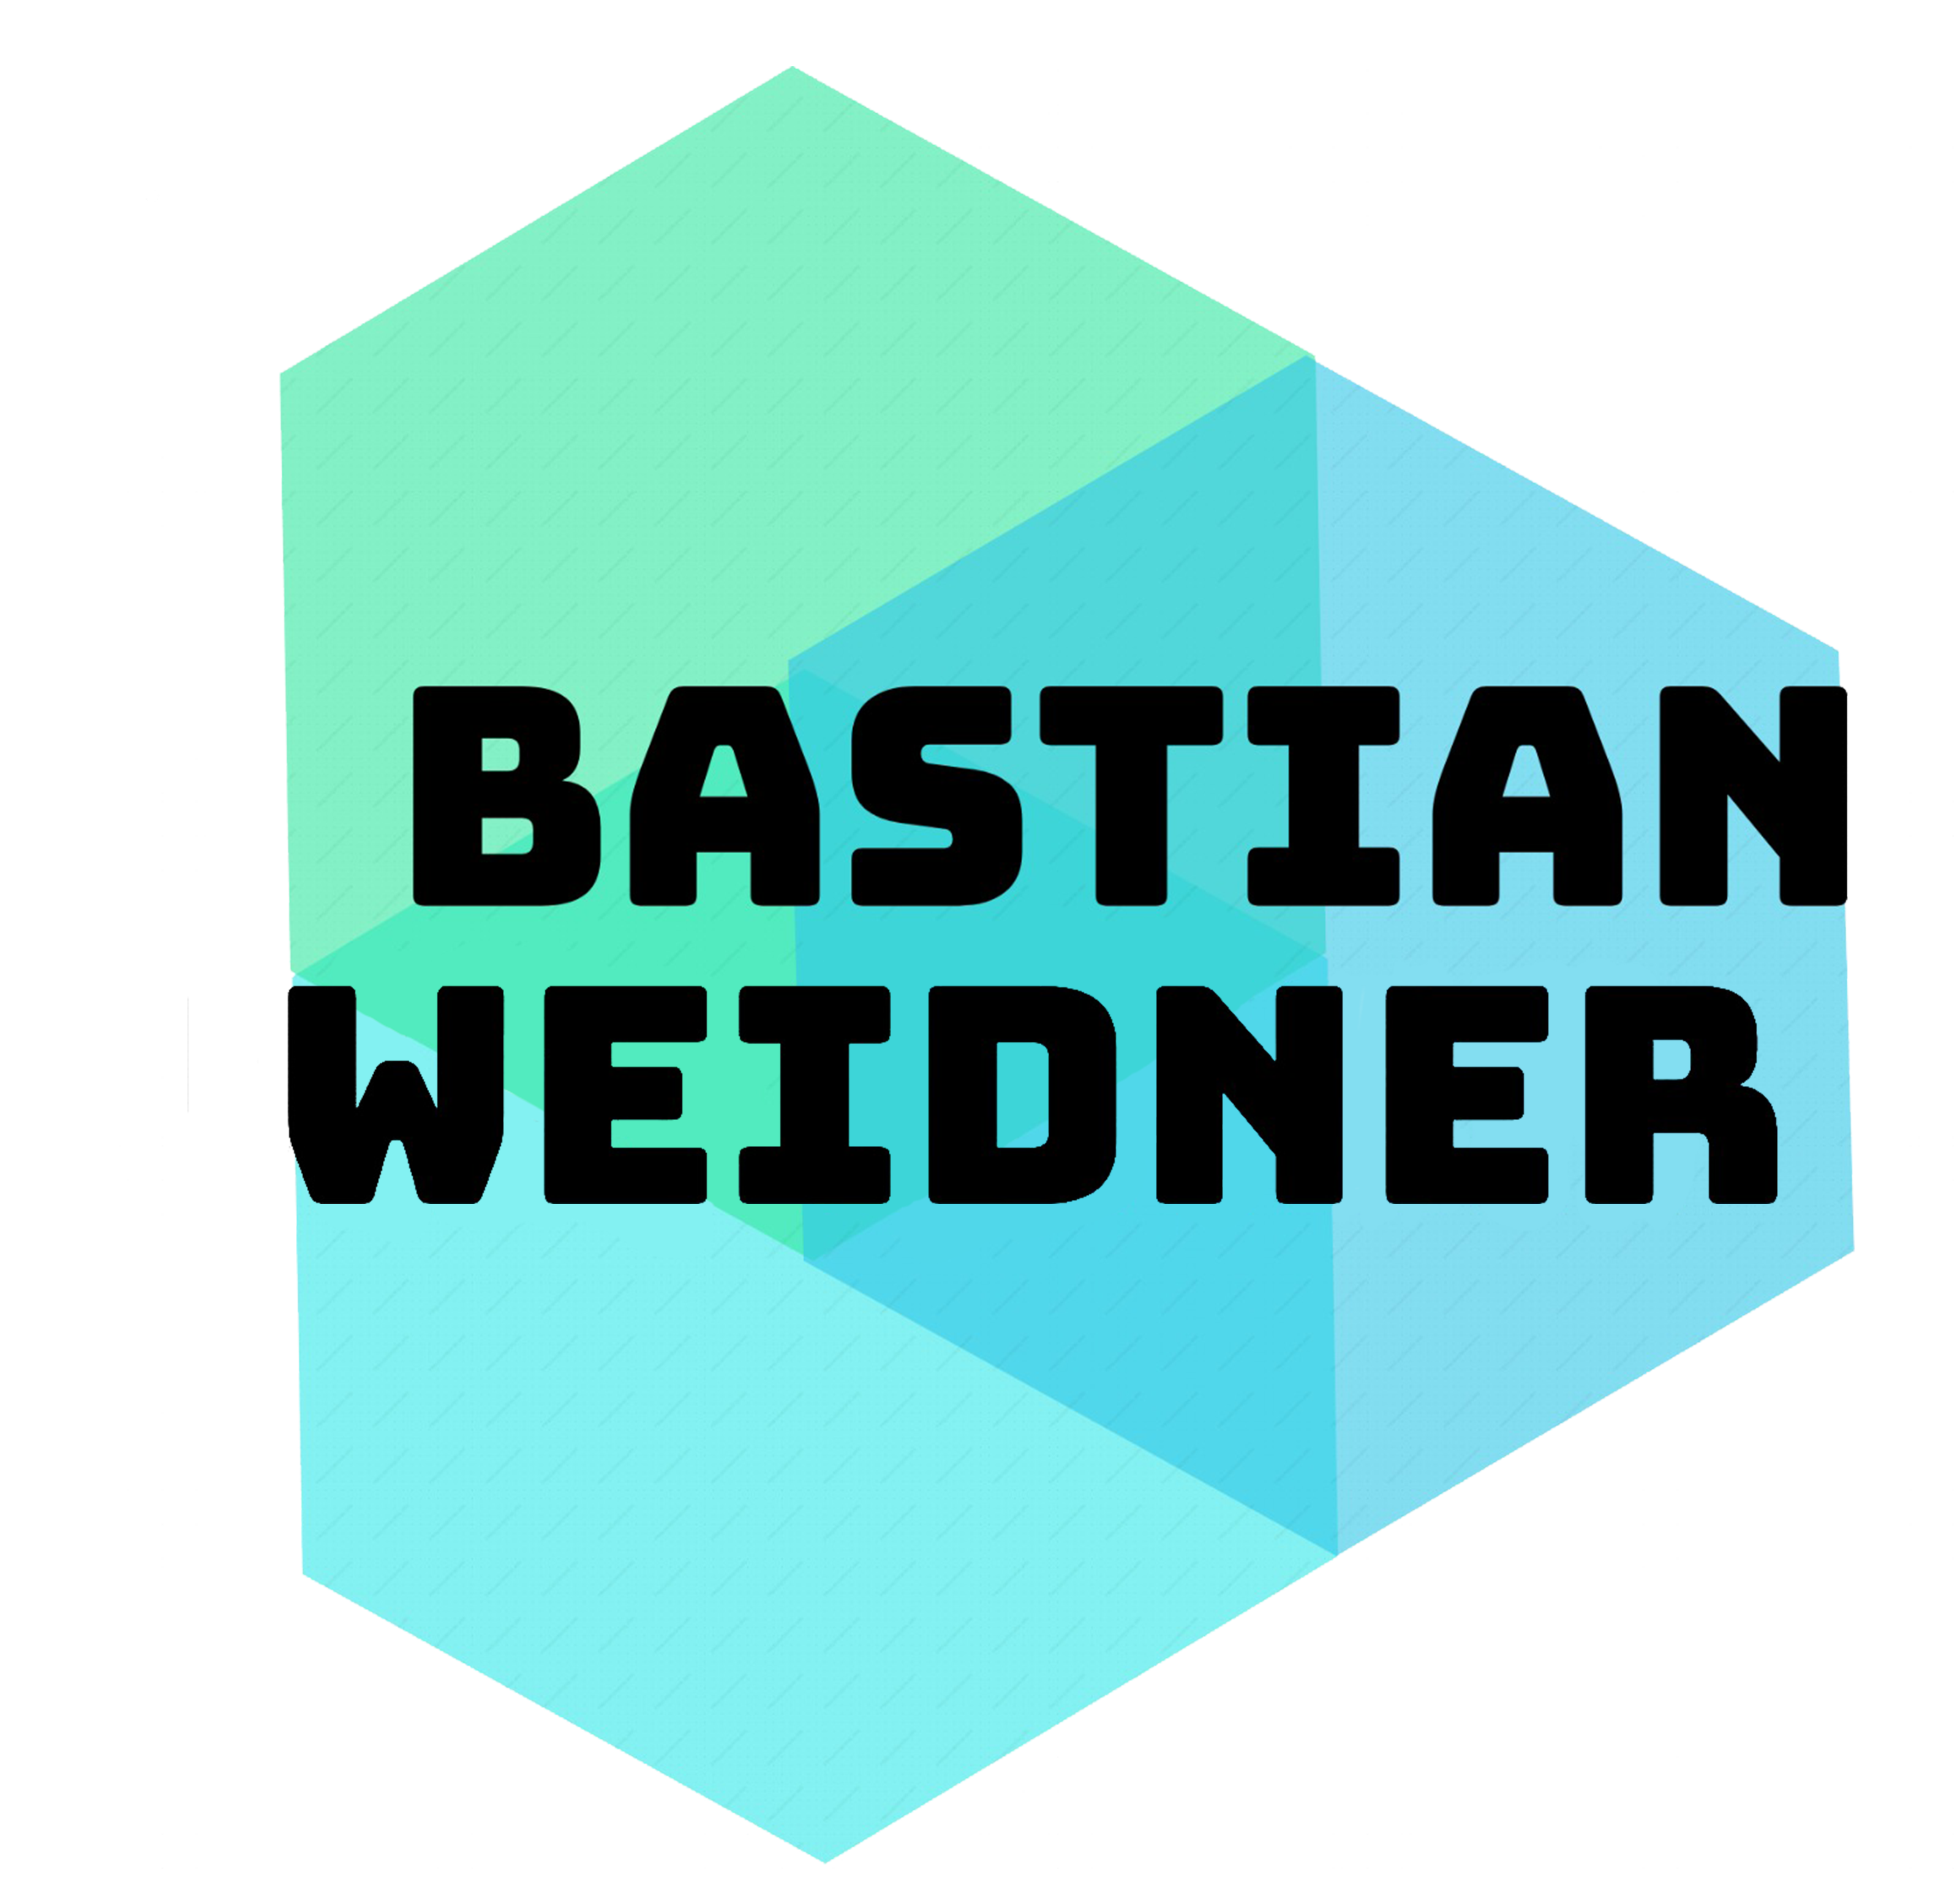 Bastian Weidner